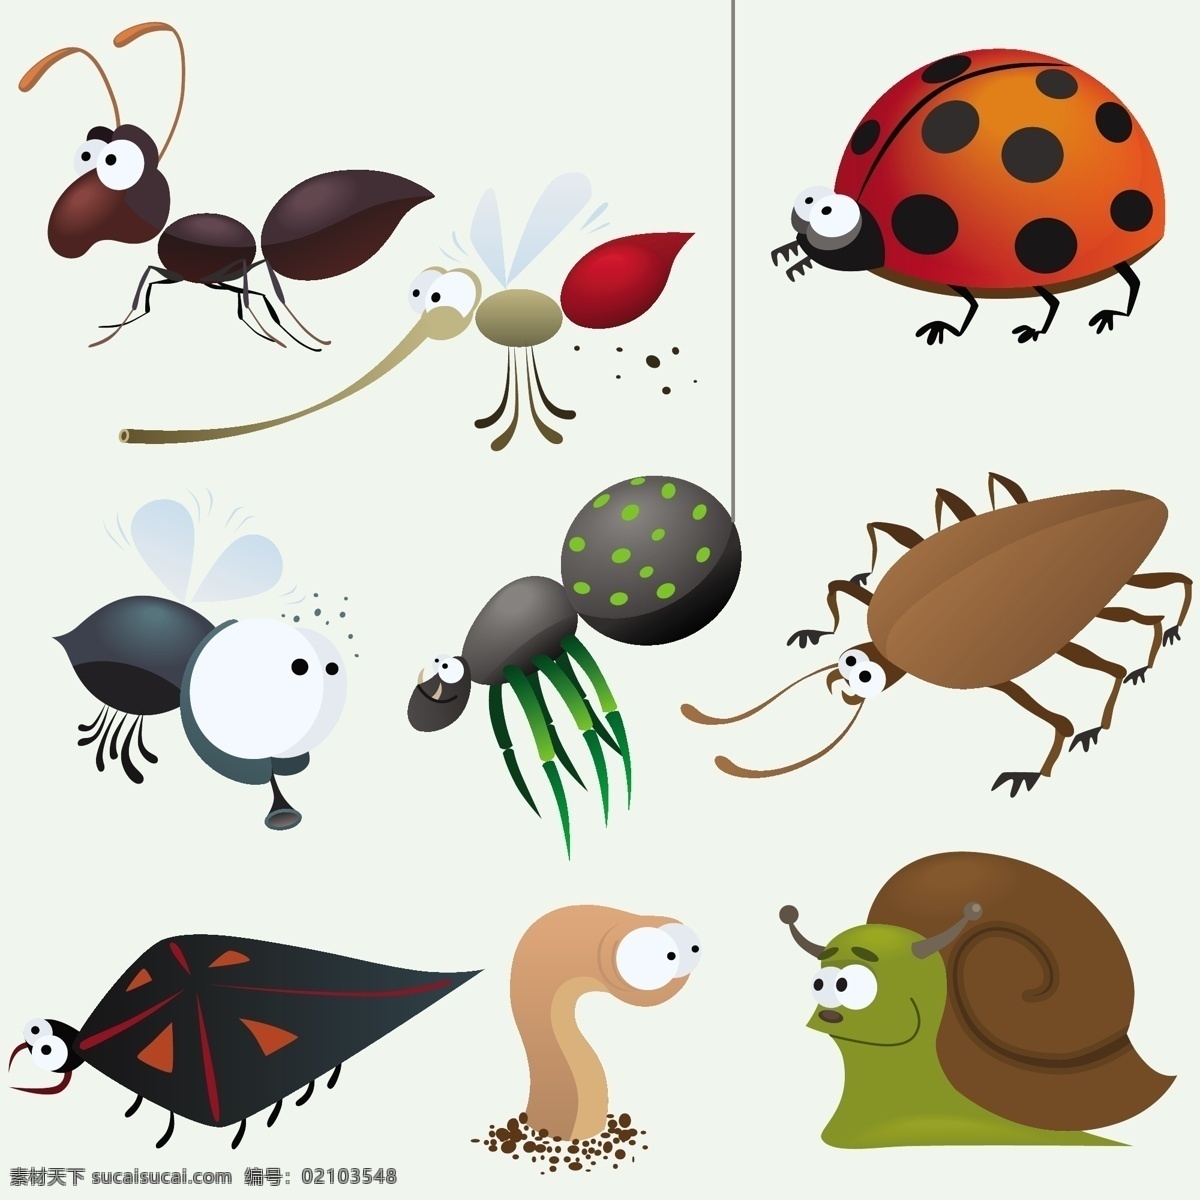 卡通 昆虫 矢量 动物 可爱 蚂蚁 瓢虫 矢量素材 蚊子 蜗牛 蜘蛛 蚯蚓 decoder 矢量图 其他矢量图